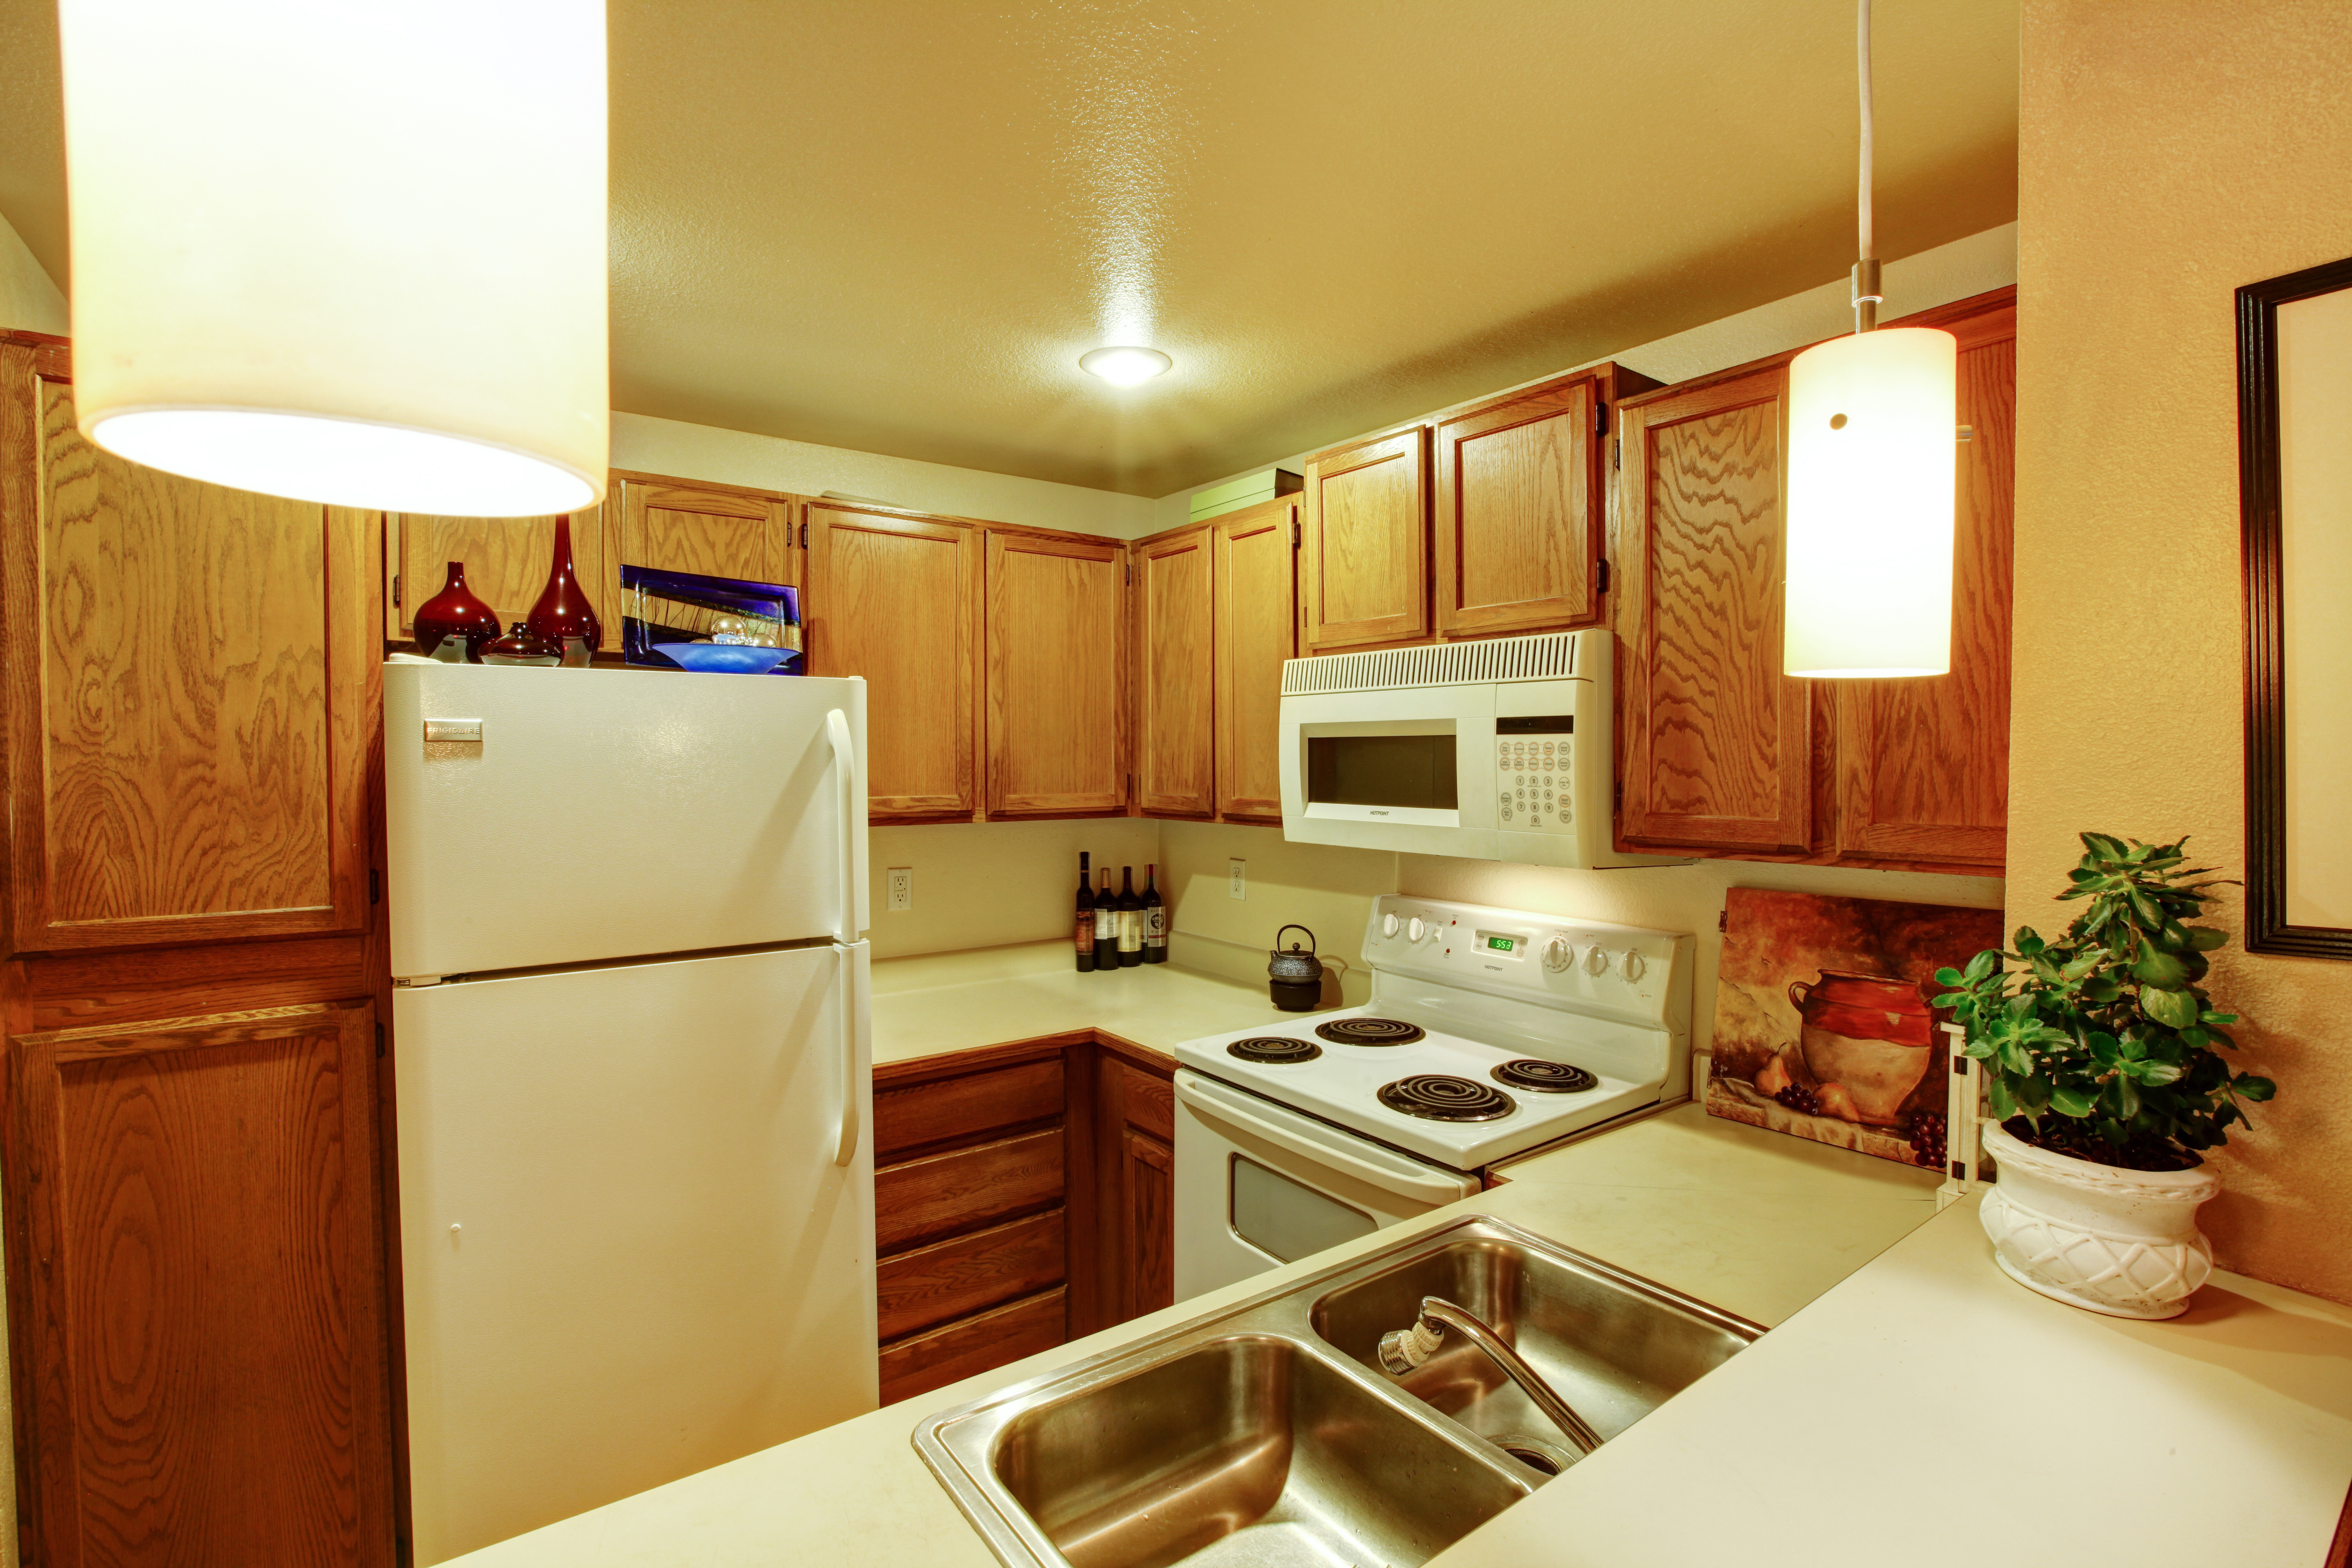 Une vue des armoires de cuisine avec un évier et de vieux appareils électroménagers blancs | Source : Shutterstock